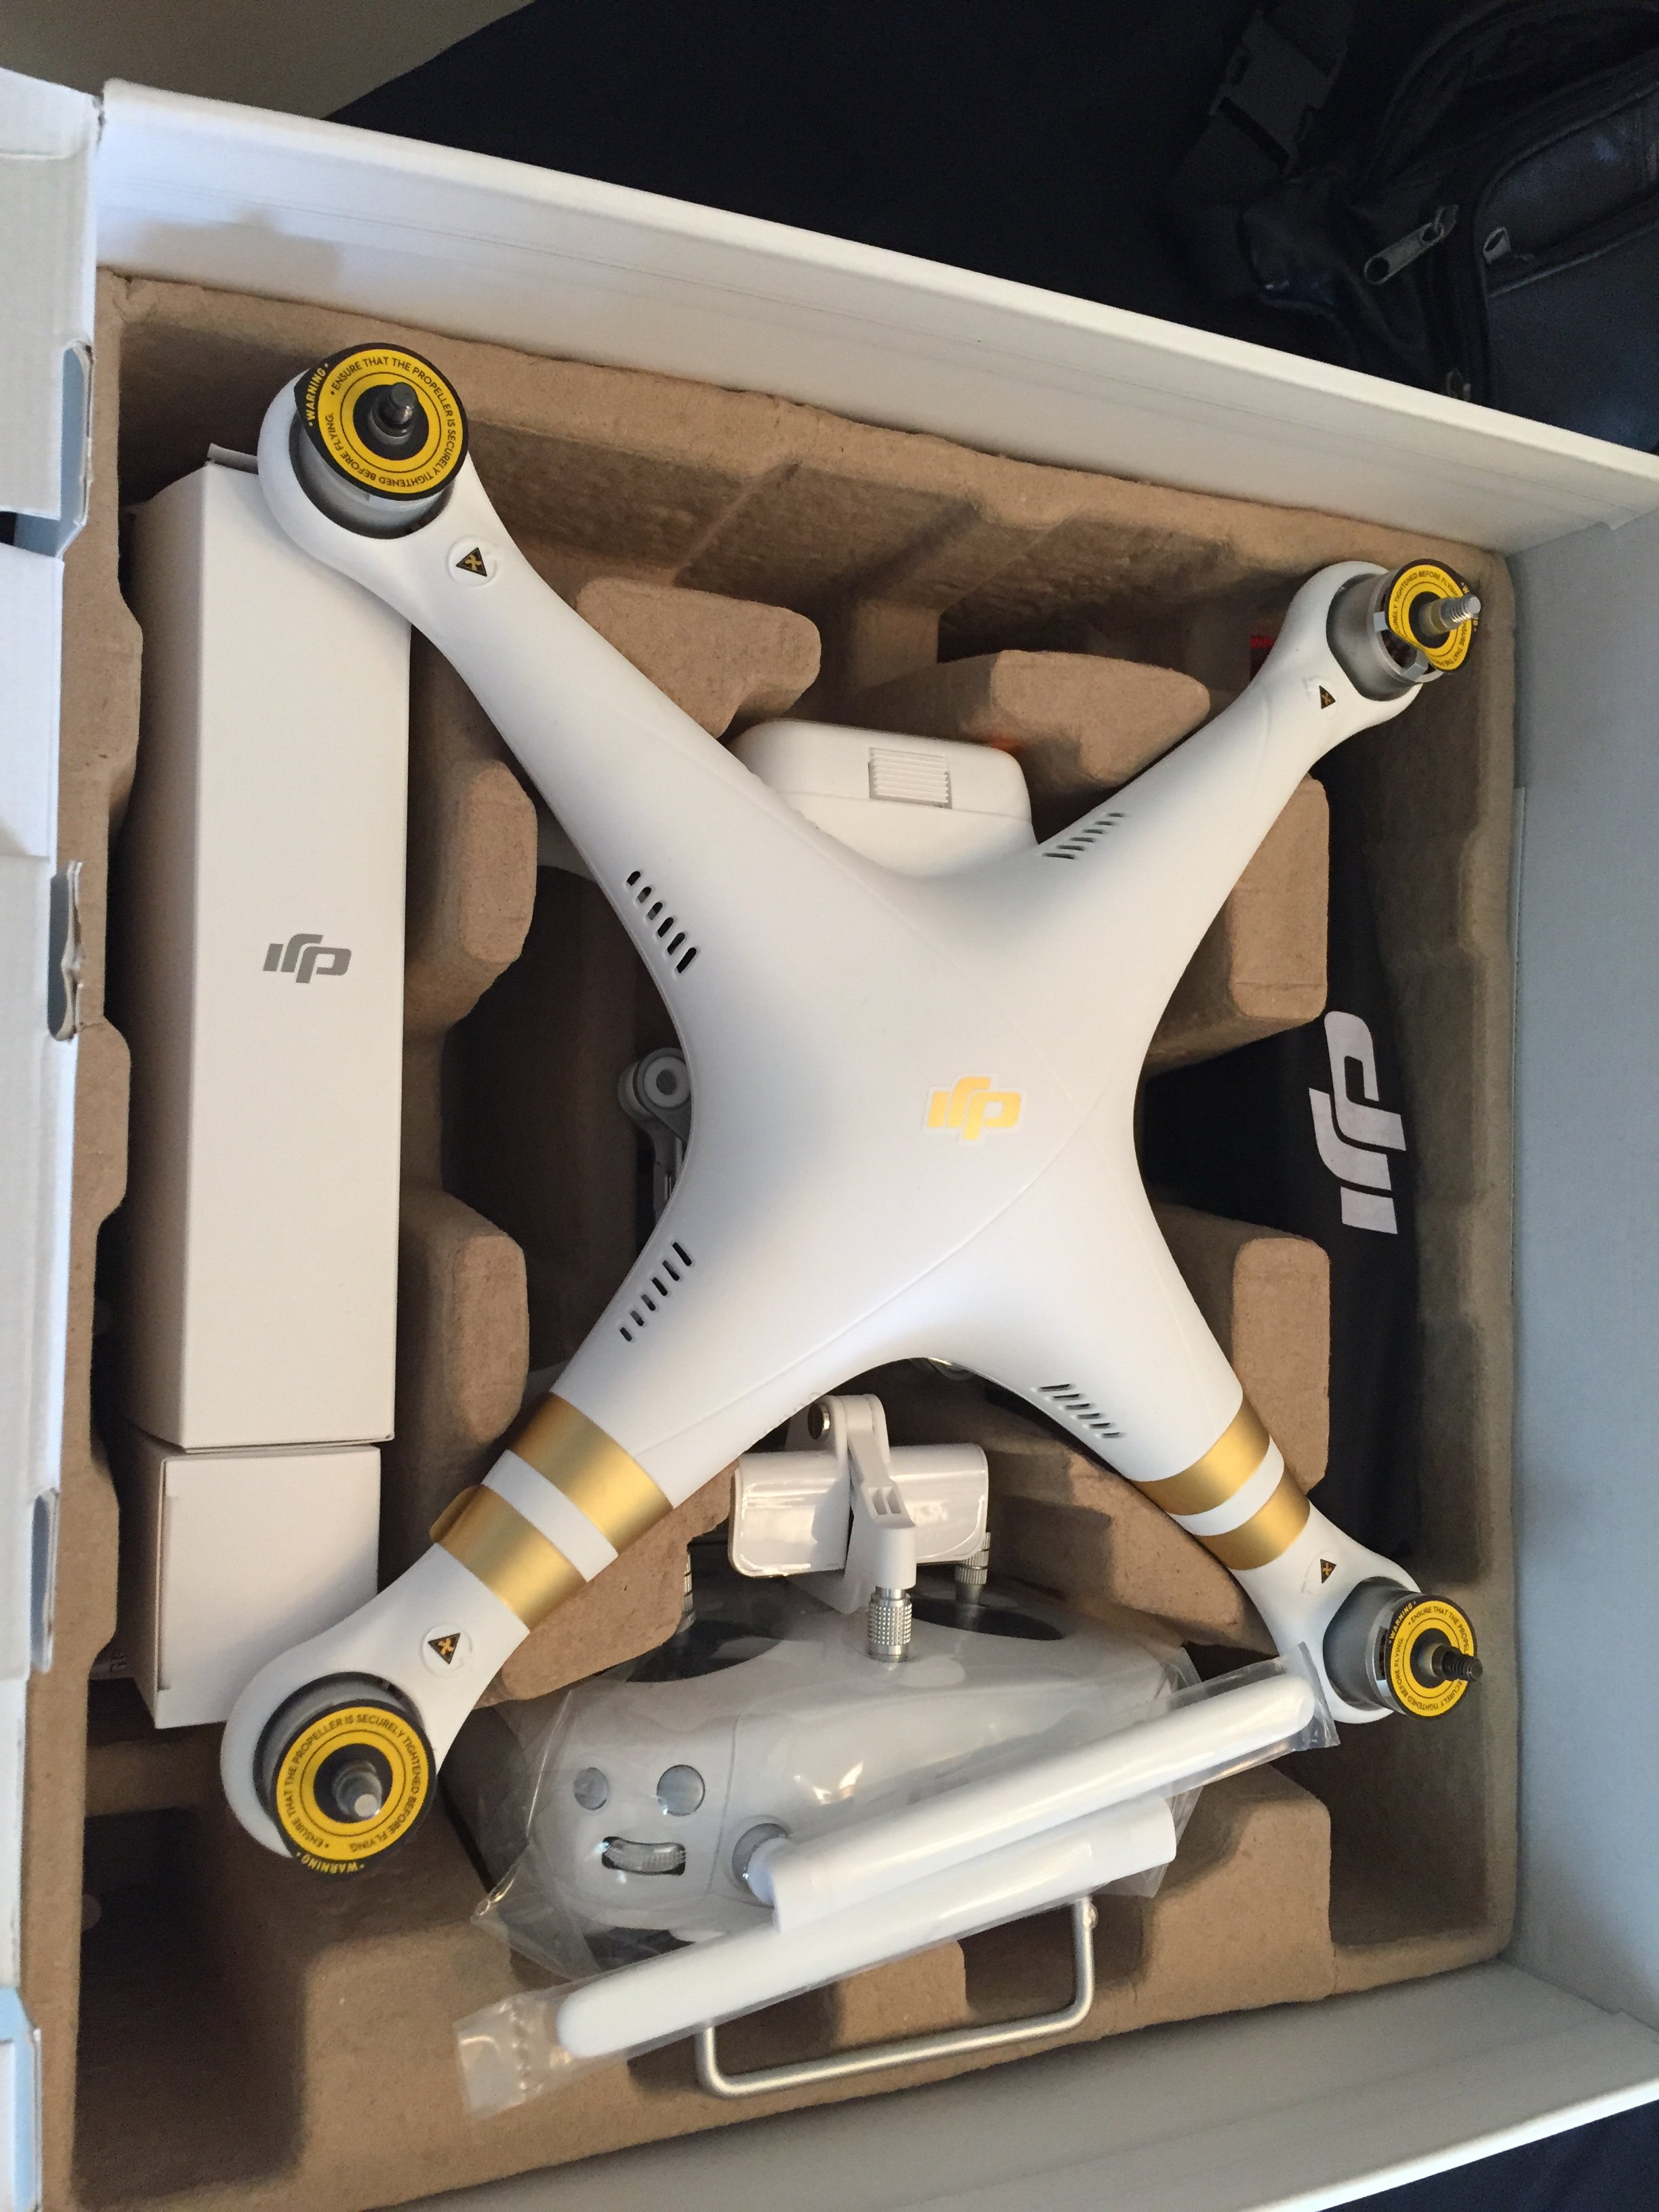 Drone P3p (1)